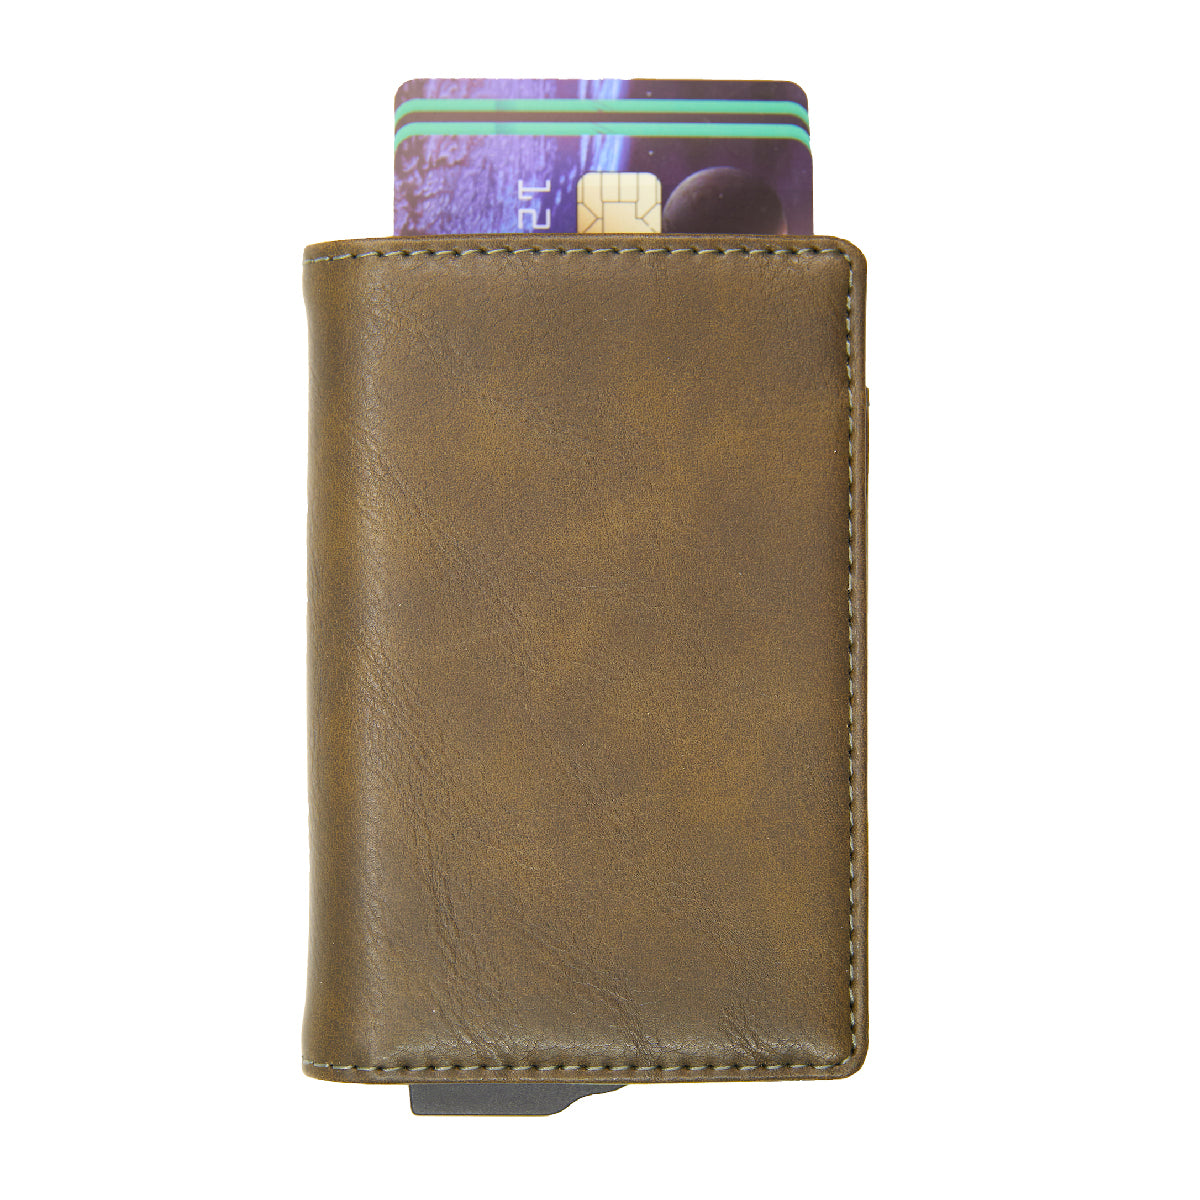 [寄海外] Cardhoda - Mini RFID 防盜卡 PU 皮款銀包 (軍綠色/棕色/淺卡其)